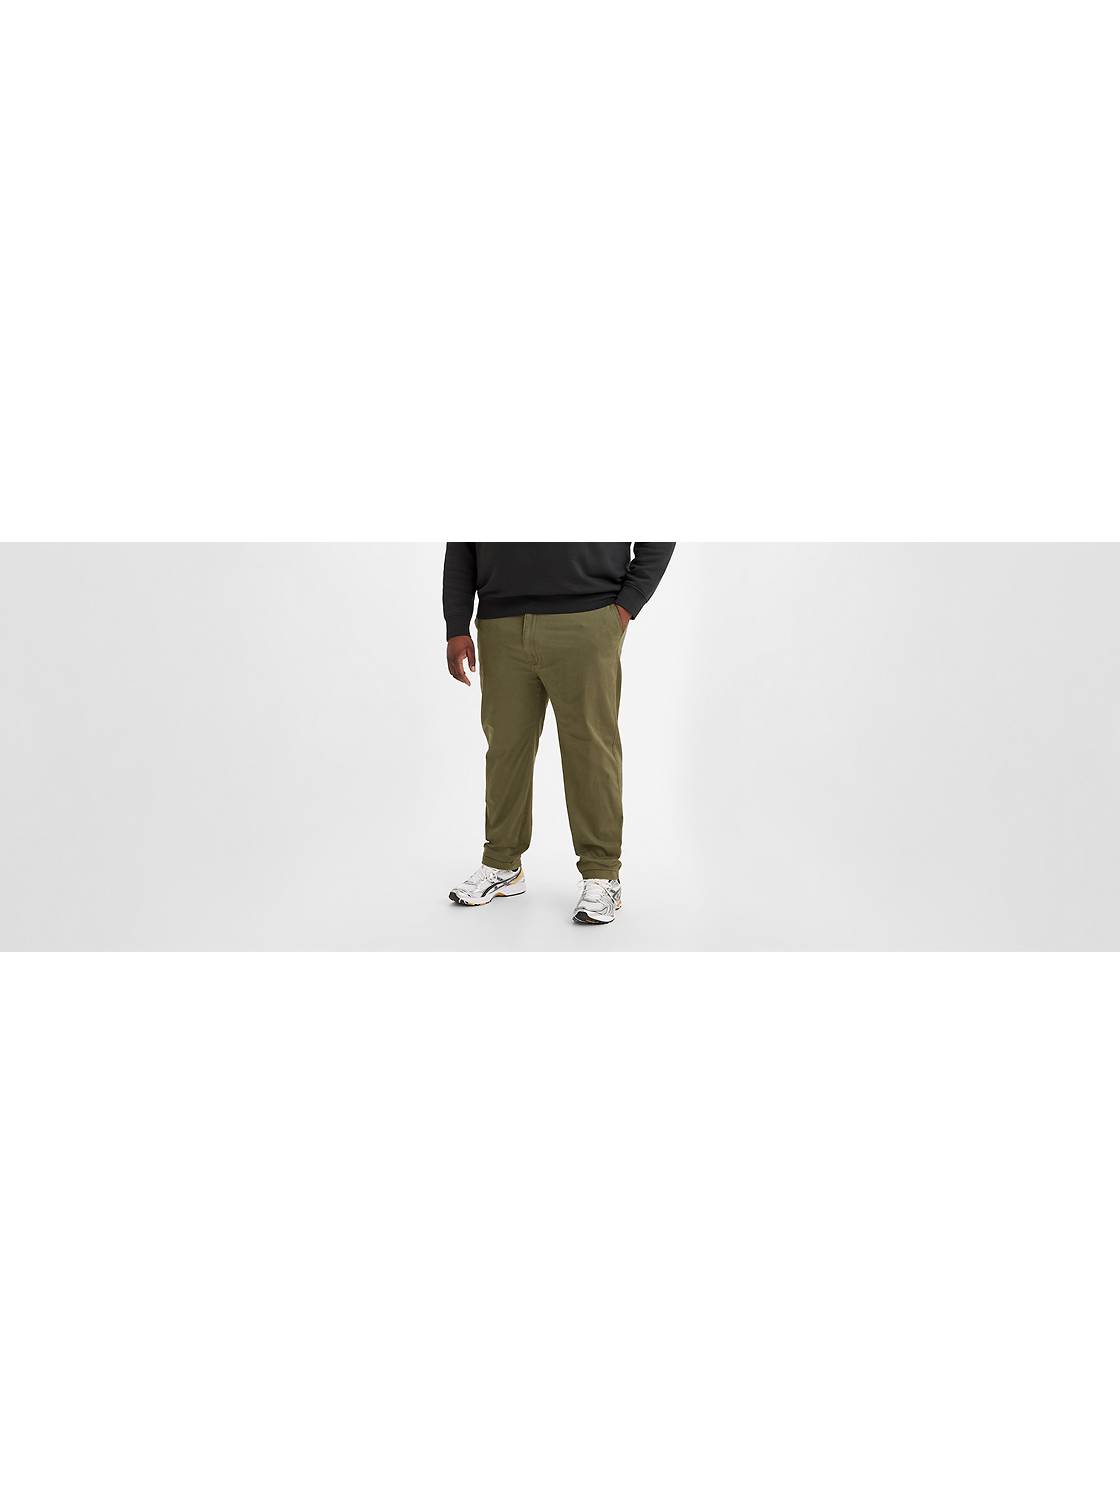 XX Chino Standard Taper Pants (Big & Tall) 1